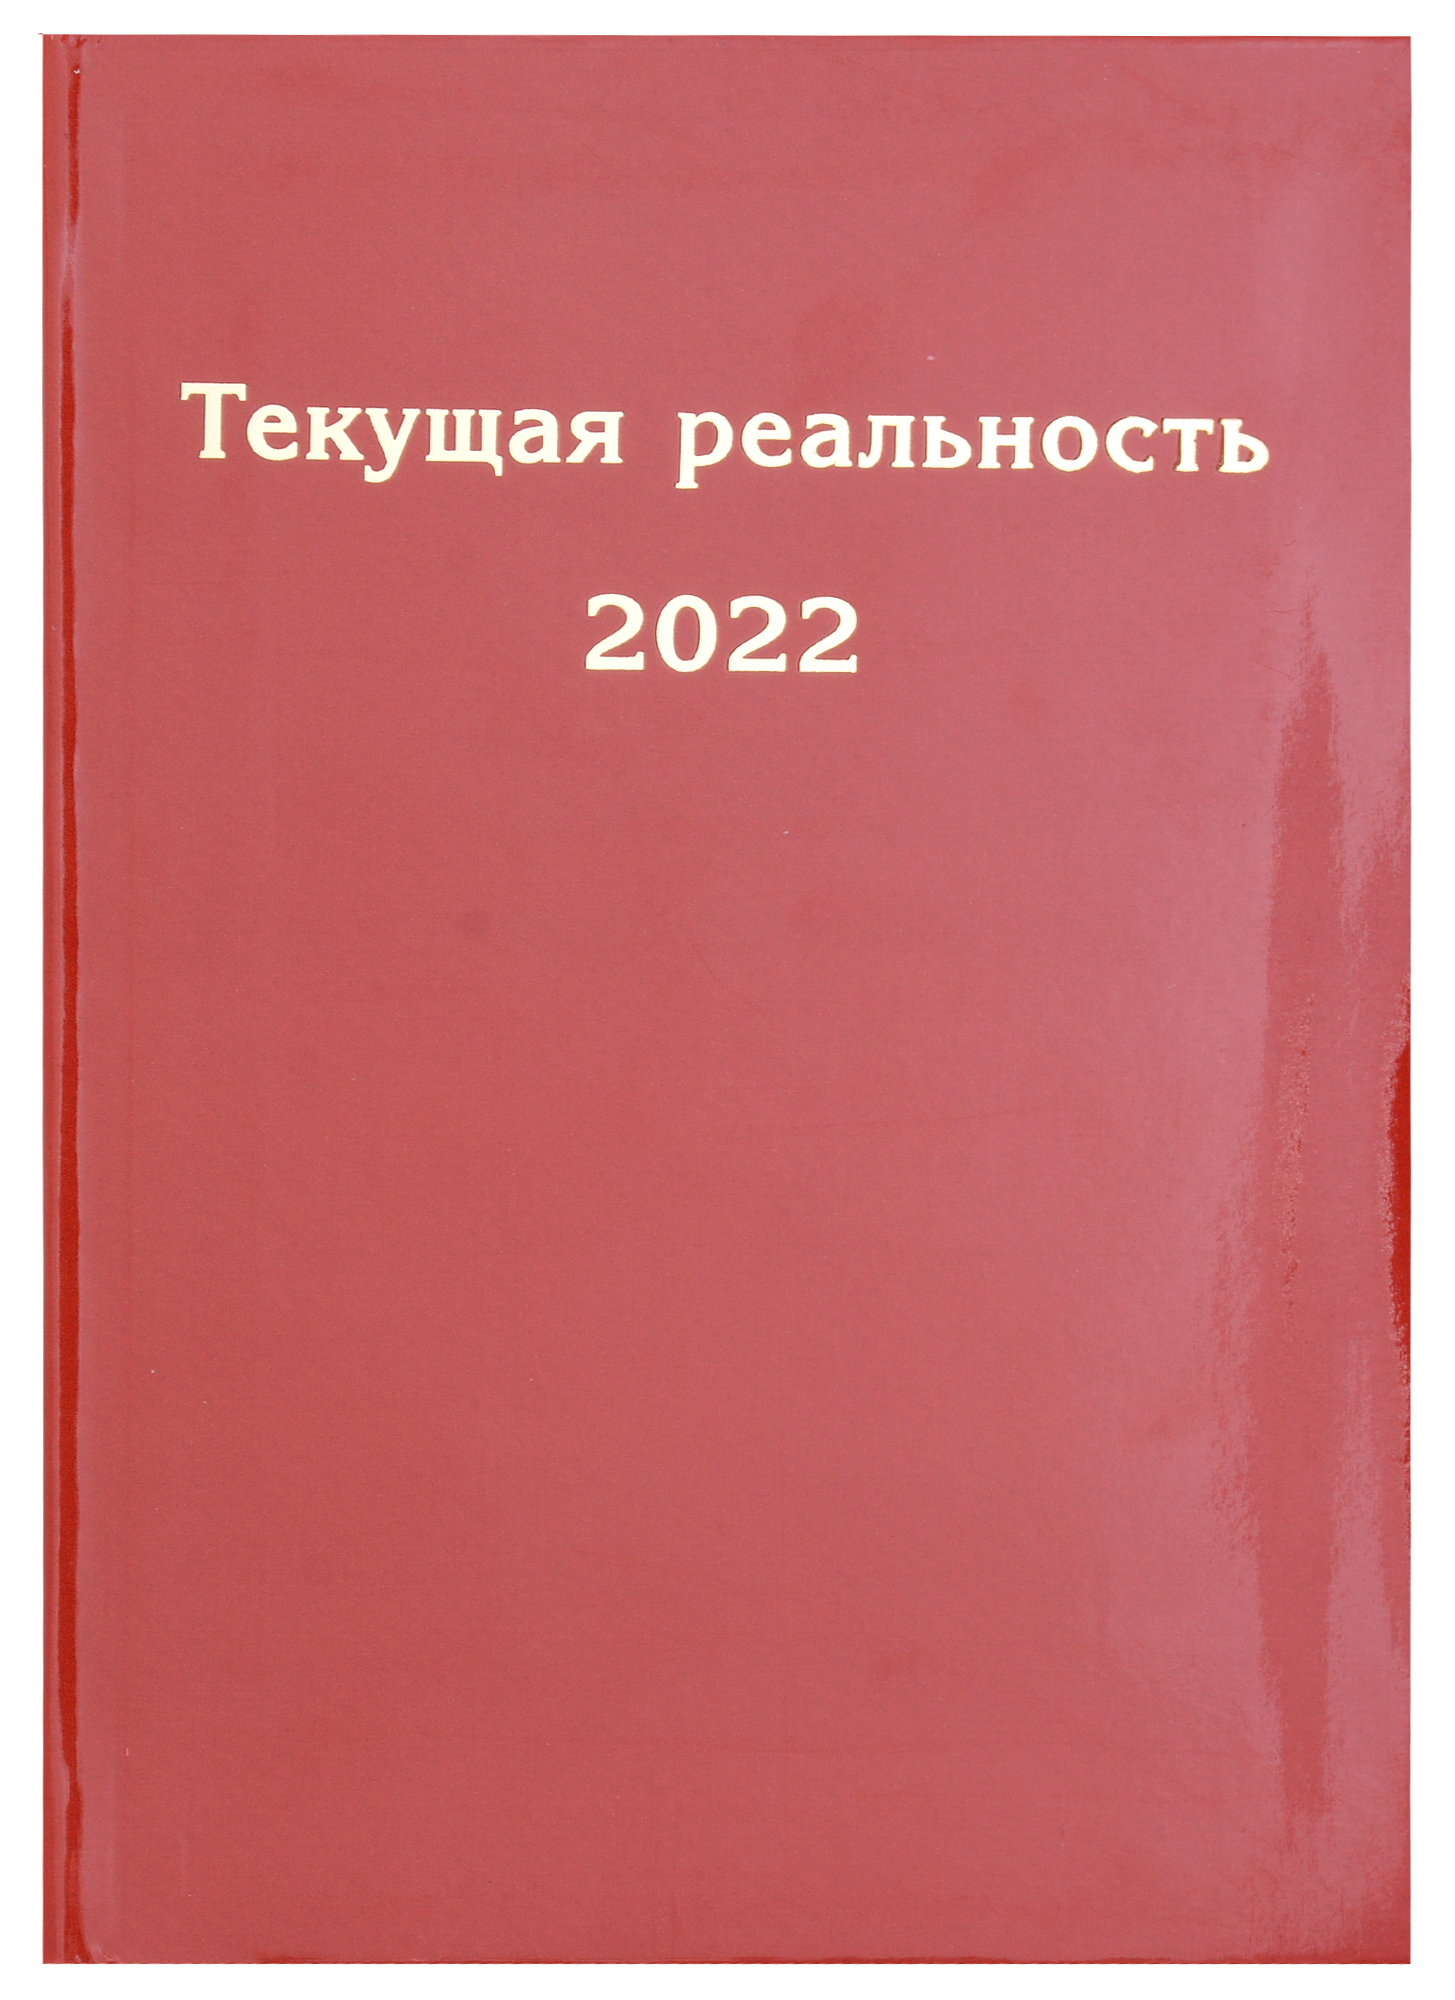 пономарева е сост текущая реальность 2018 избранная хронология январь июнь июль декабрь комплект из 2 книг Текущая реальность 2022. Избранная хронология